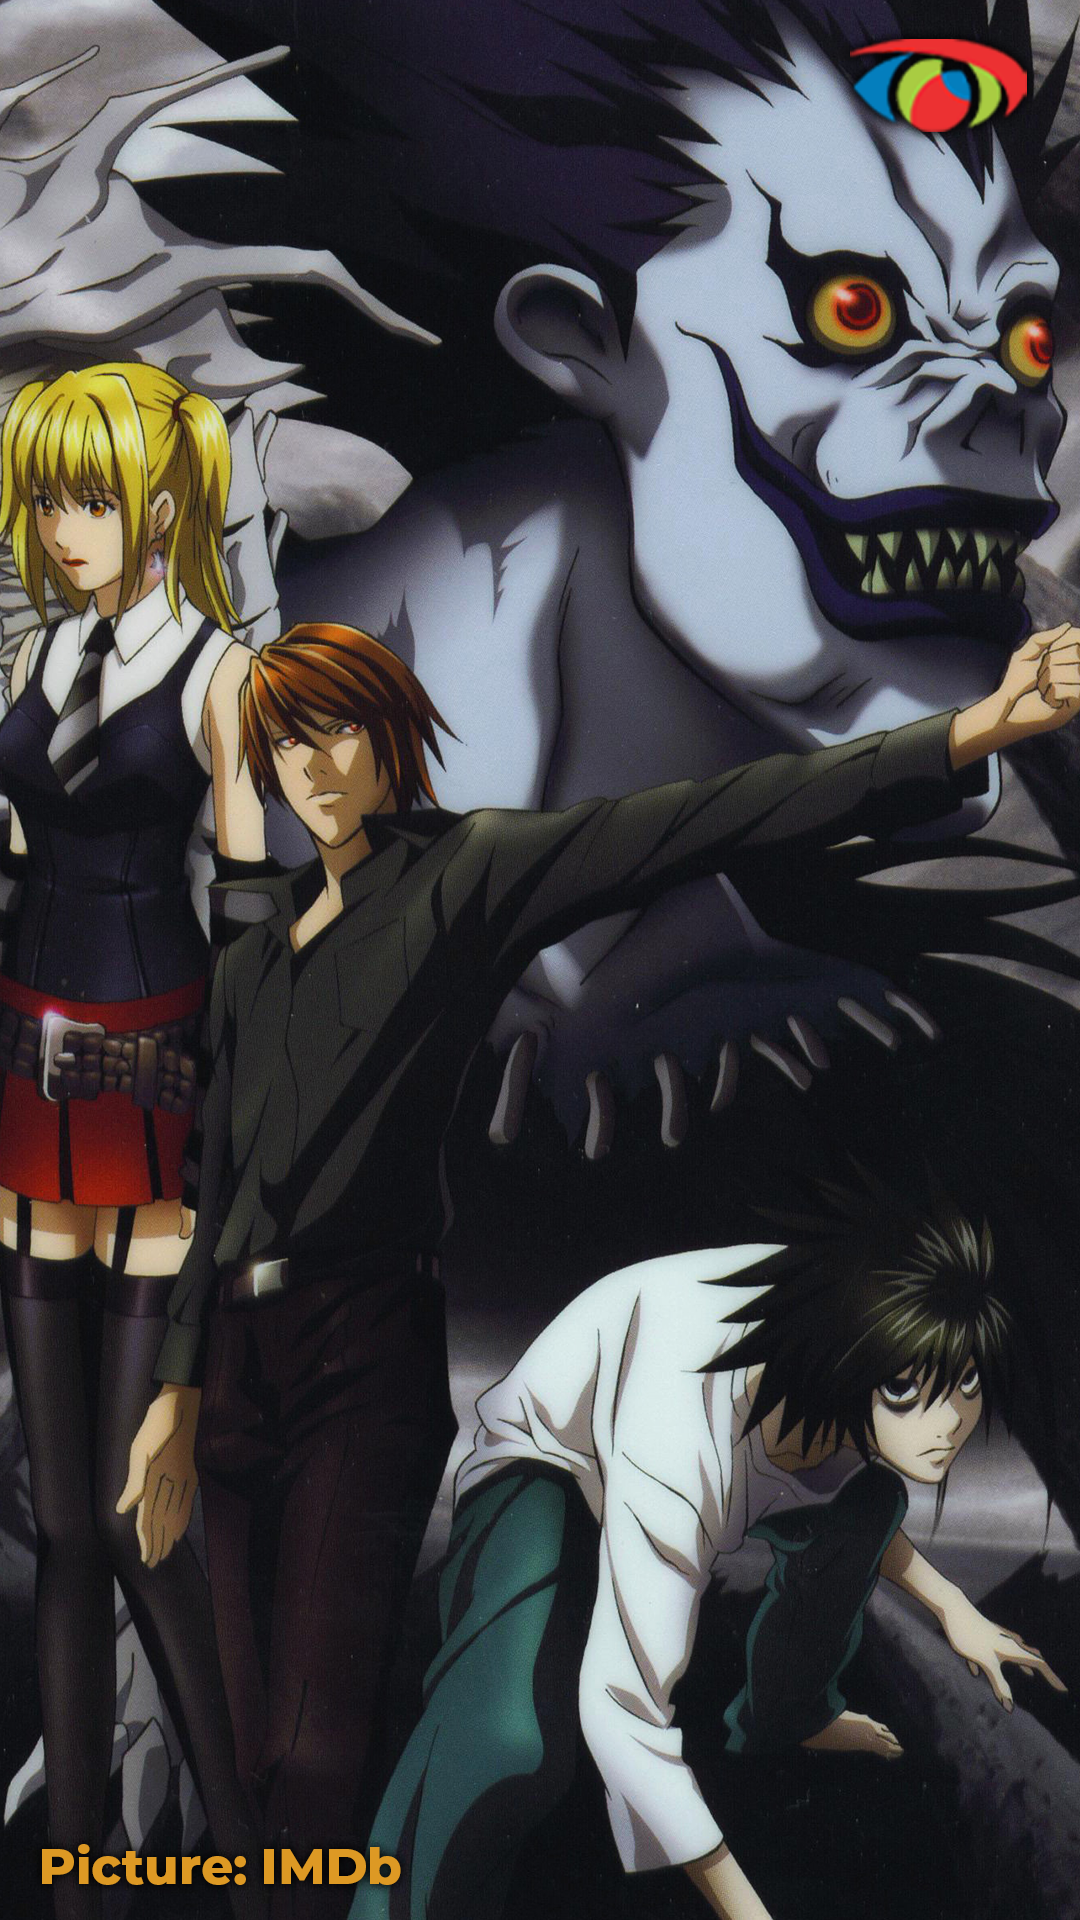 Anime #Monster Johan Liebert #1080P #wallpaper #hdwallpaper #desktop | Anime,  Anime monsters, Monster